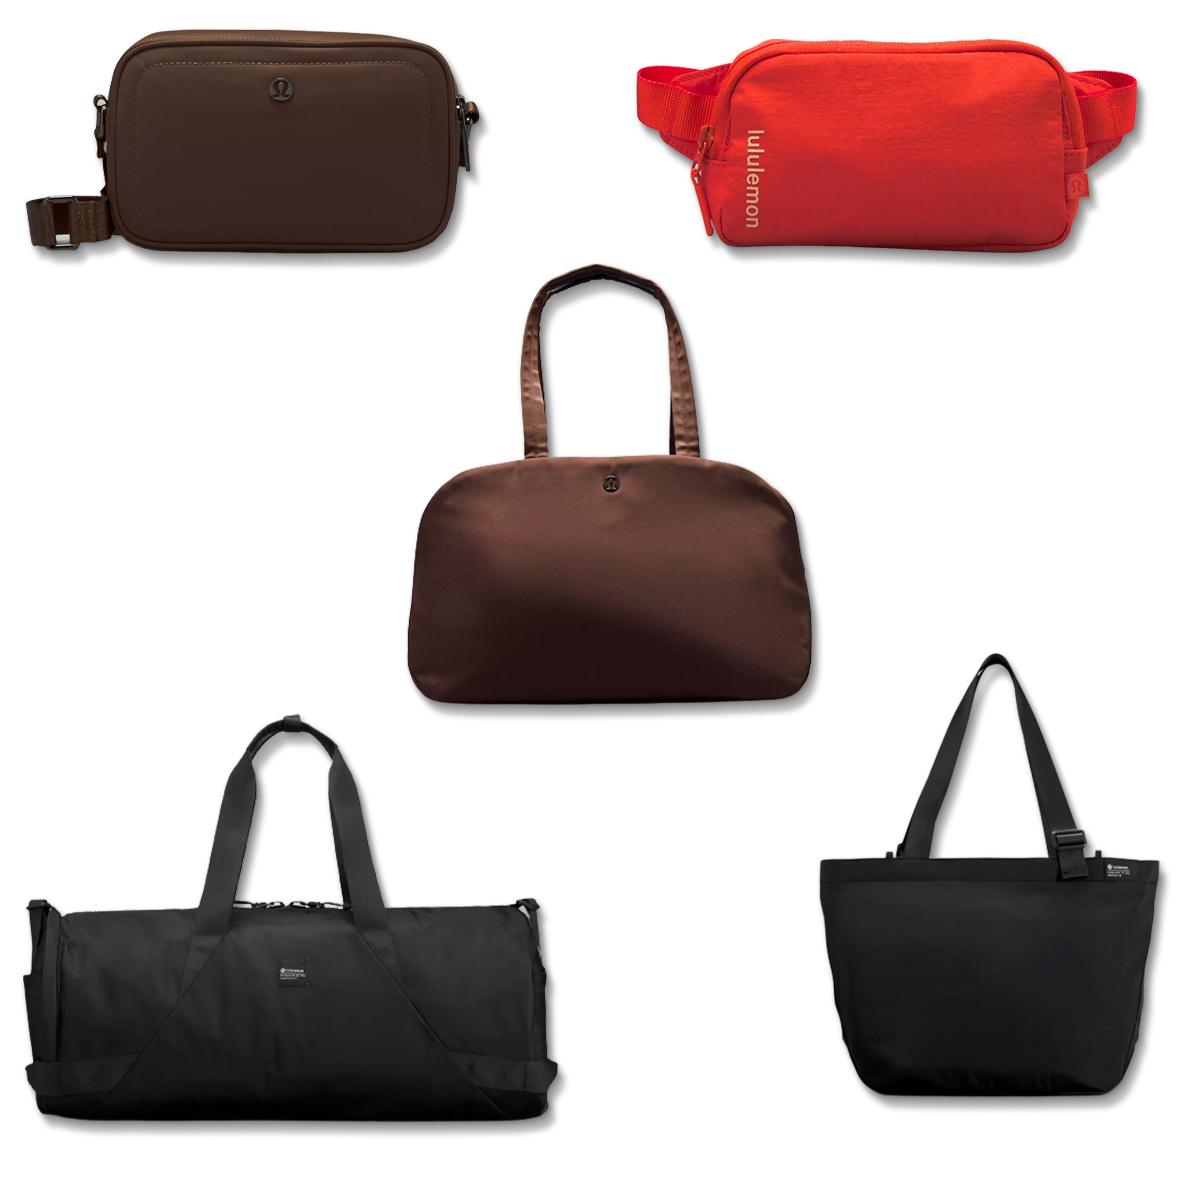  Lululemon Reusable Tote Carryall Handbag (Red) : Home